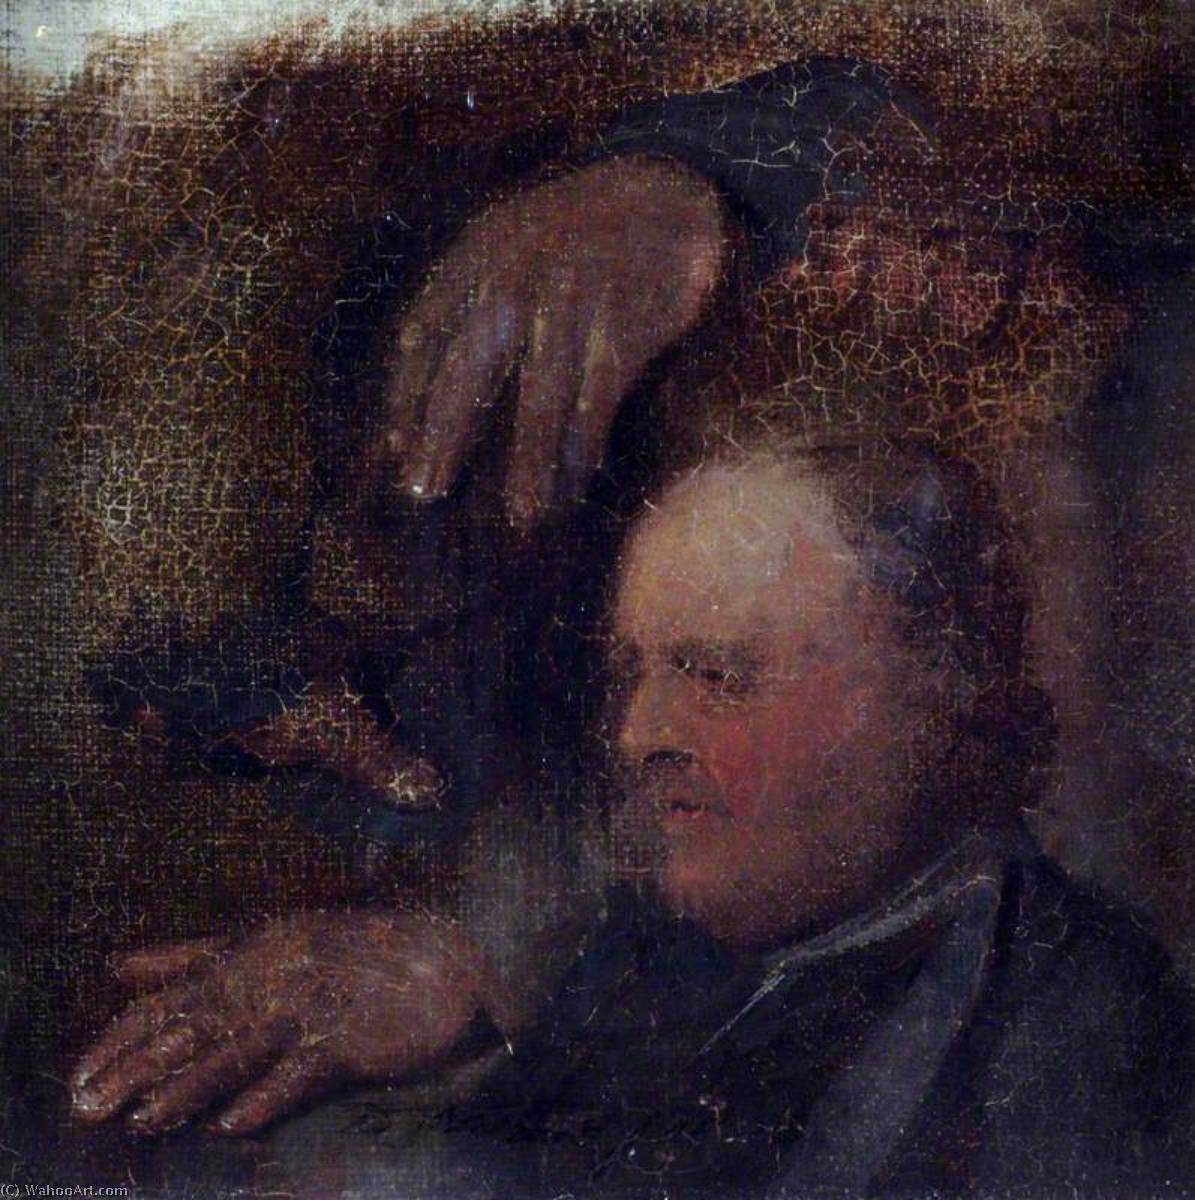 WikiOO.org - אנציקלופדיה לאמנויות יפות - ציור, יצירות אמנות David Wilkie Wynfield - A Head and Two Hands (sketch)